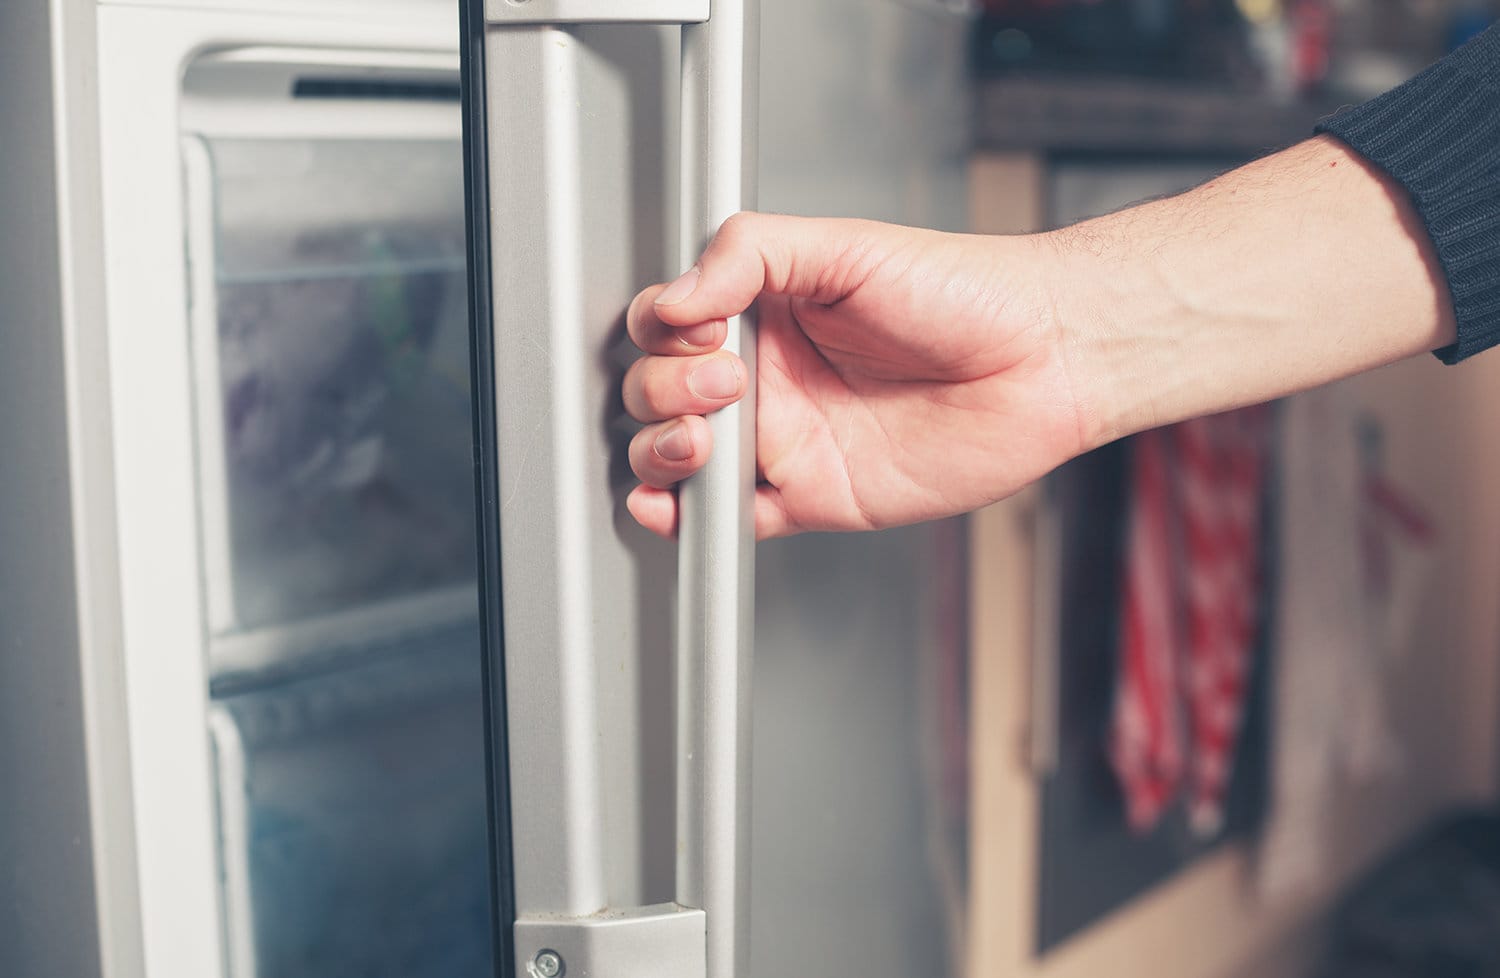 Man opening a freezer door